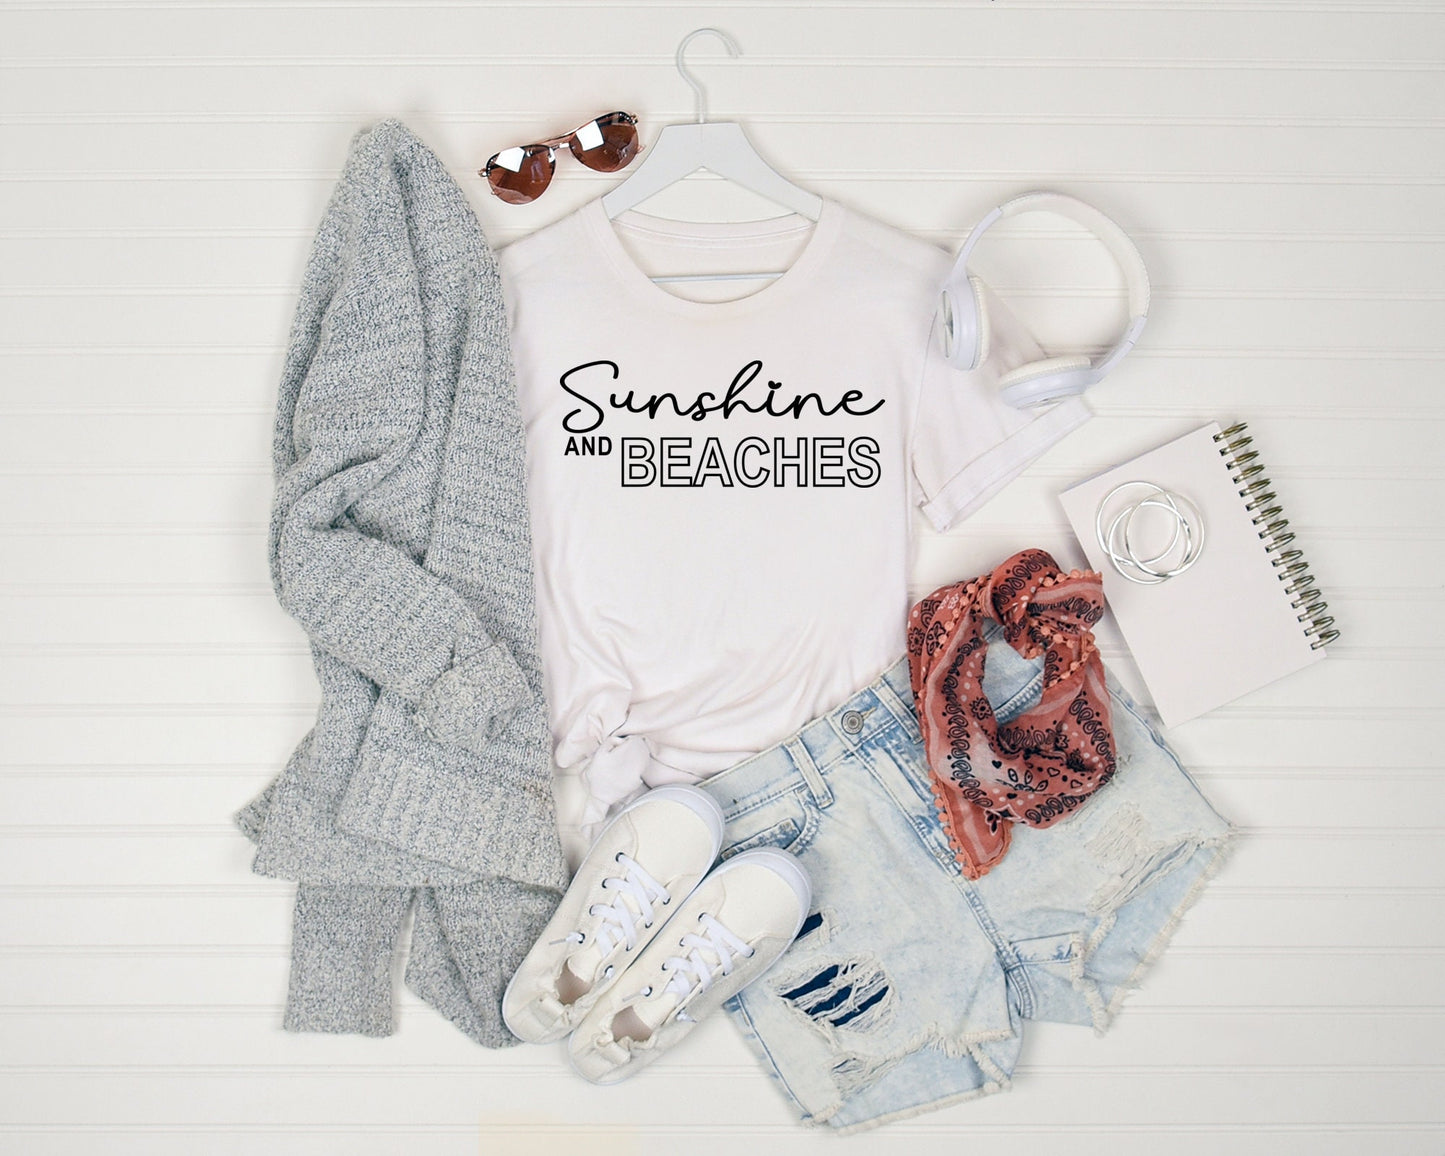 Sunshine and Beaches Shirt, Summer Shirt, Cute Summer Shirt, Summertime Shirt, Beach Shirt, Sunshine Shirt, Summer Vacation Shirt